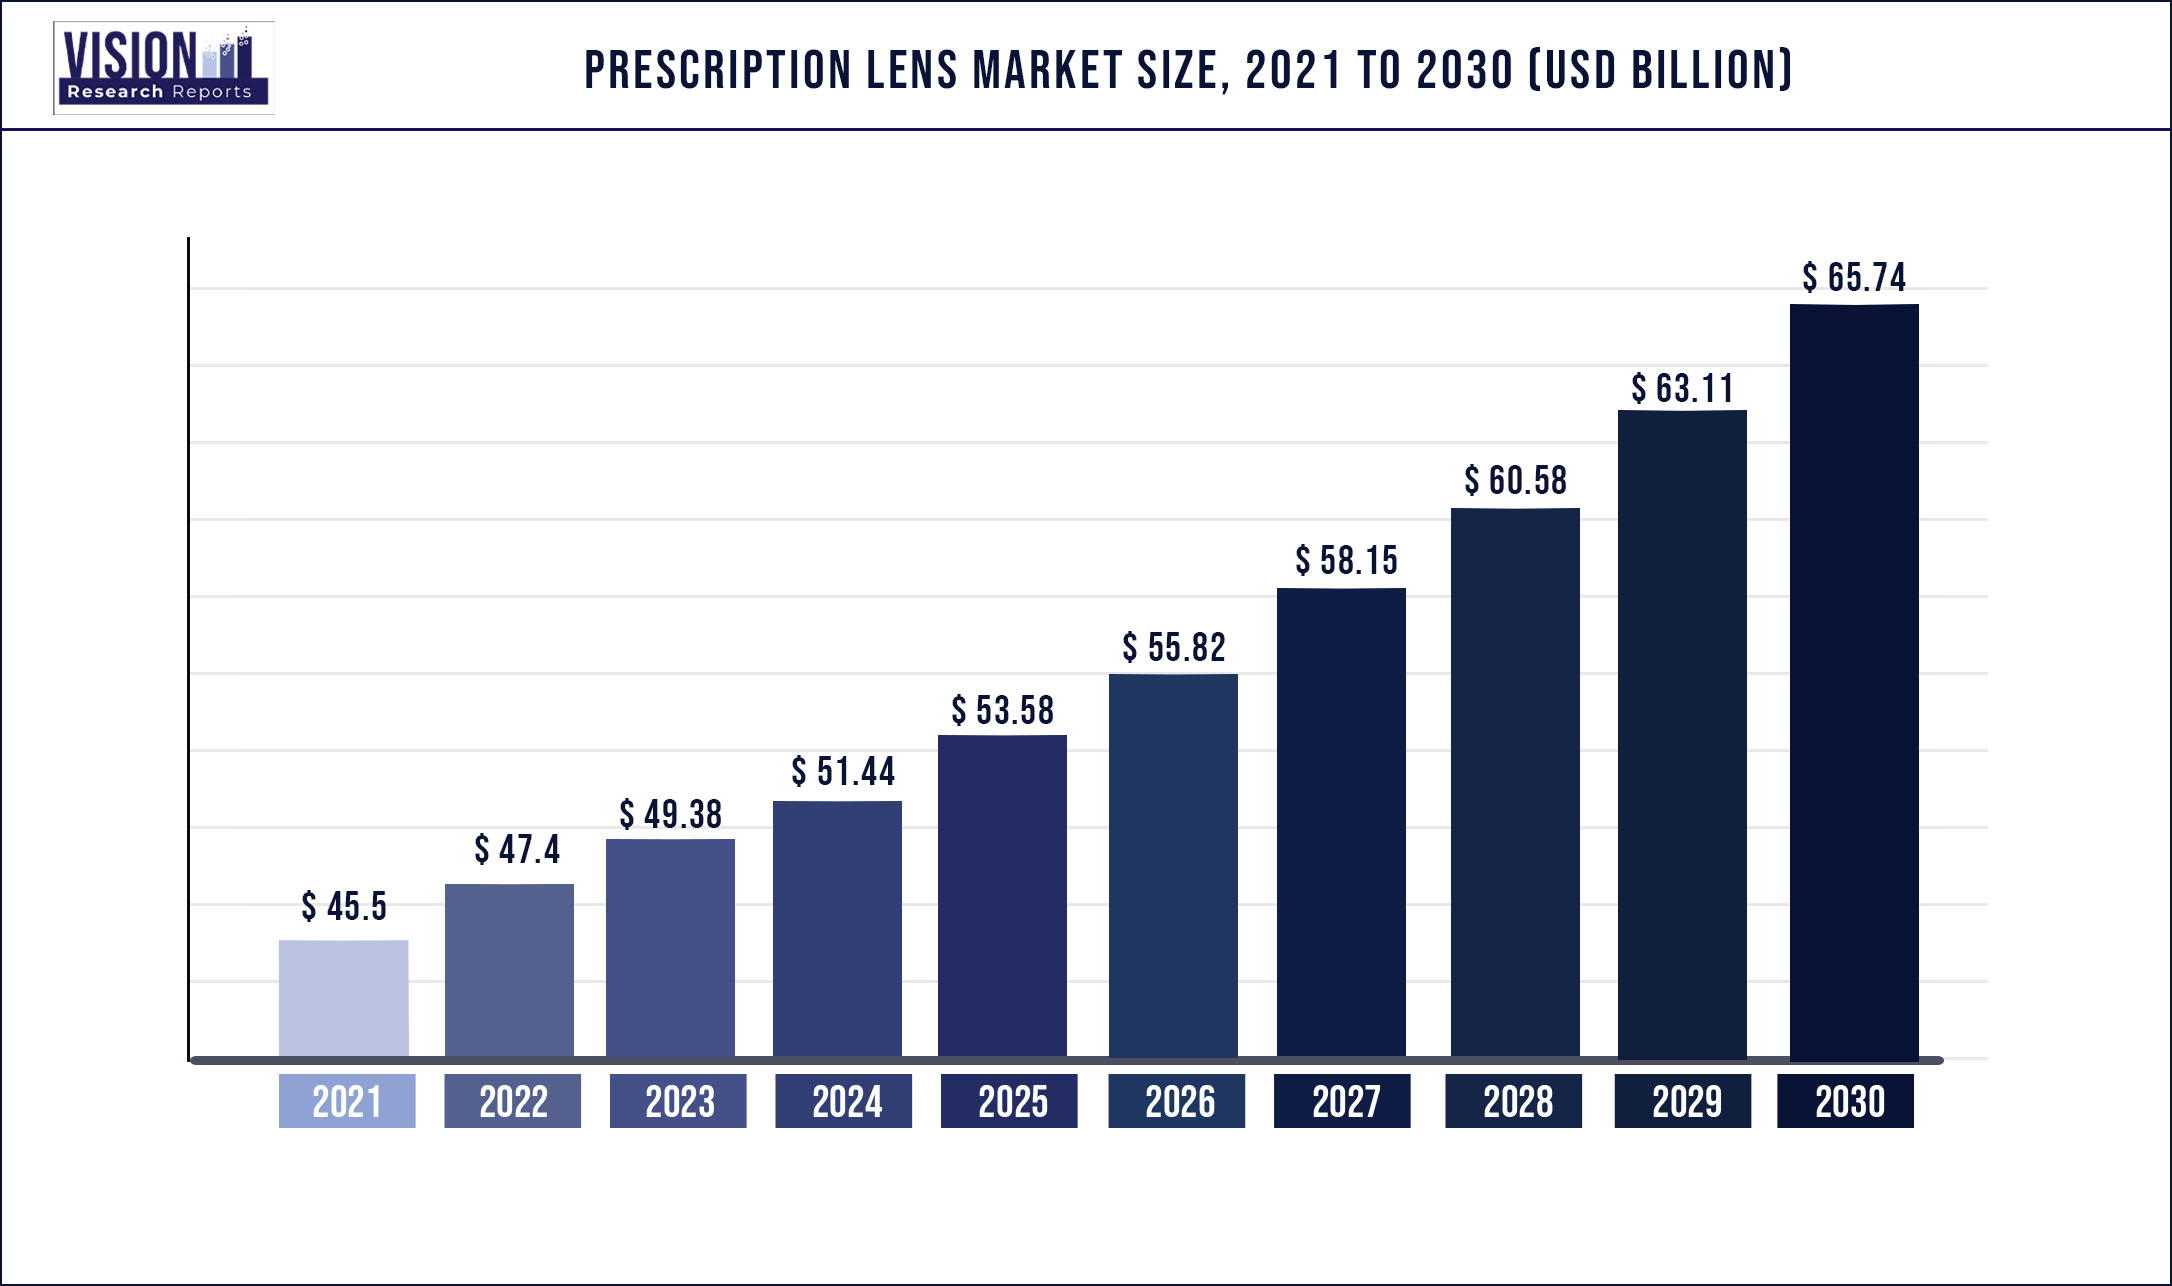 Prescription Lens Market Size 2021 to 2030